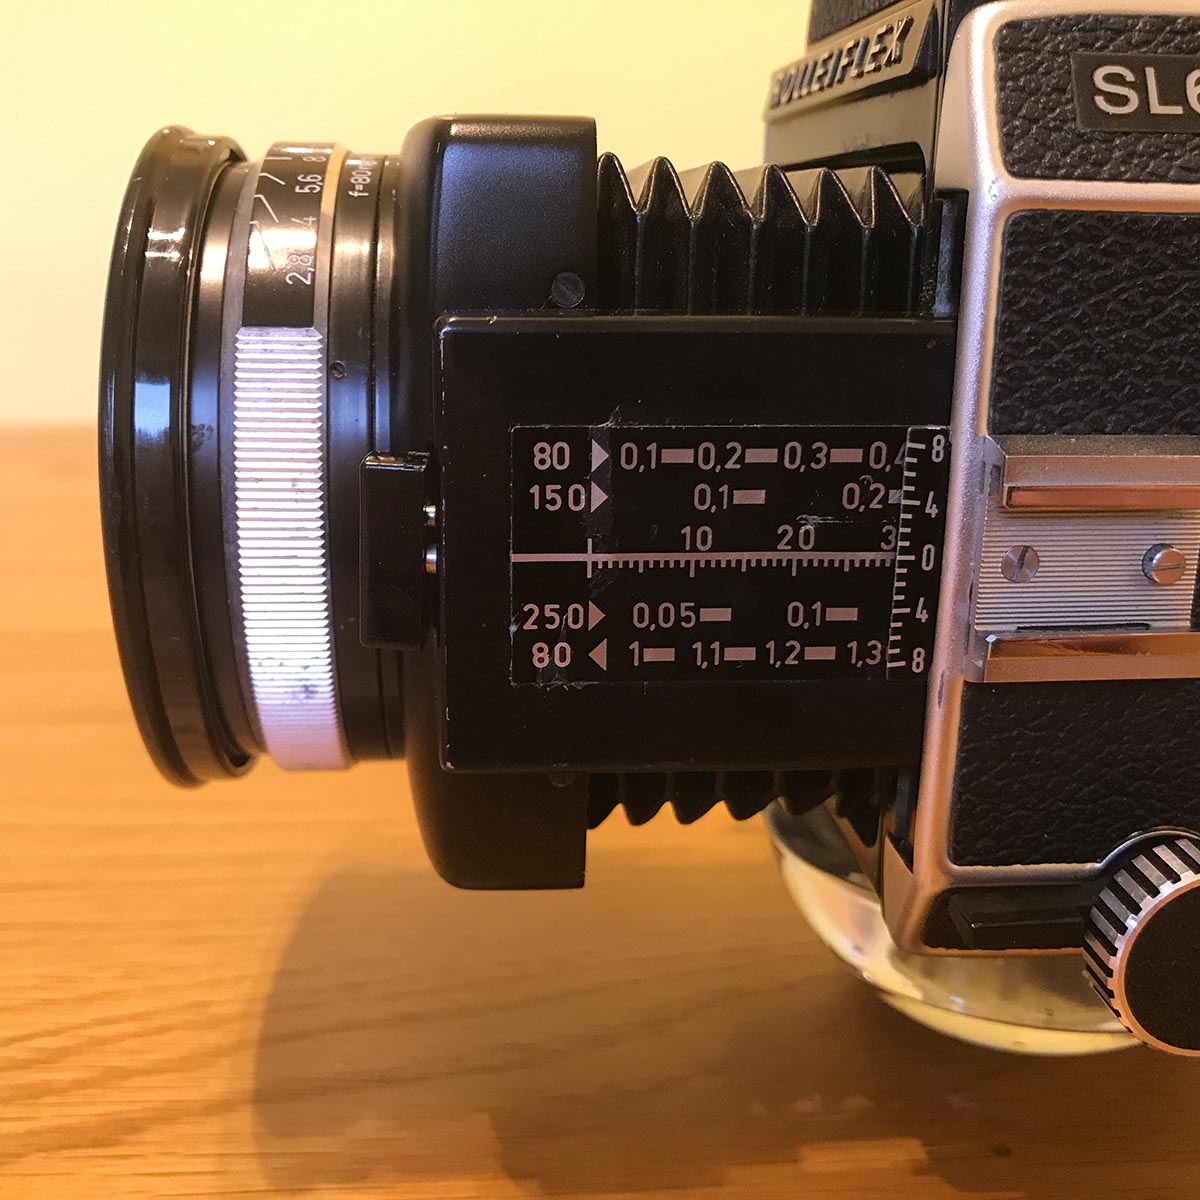 Rolleiflex SL66 - Bellows Focusing